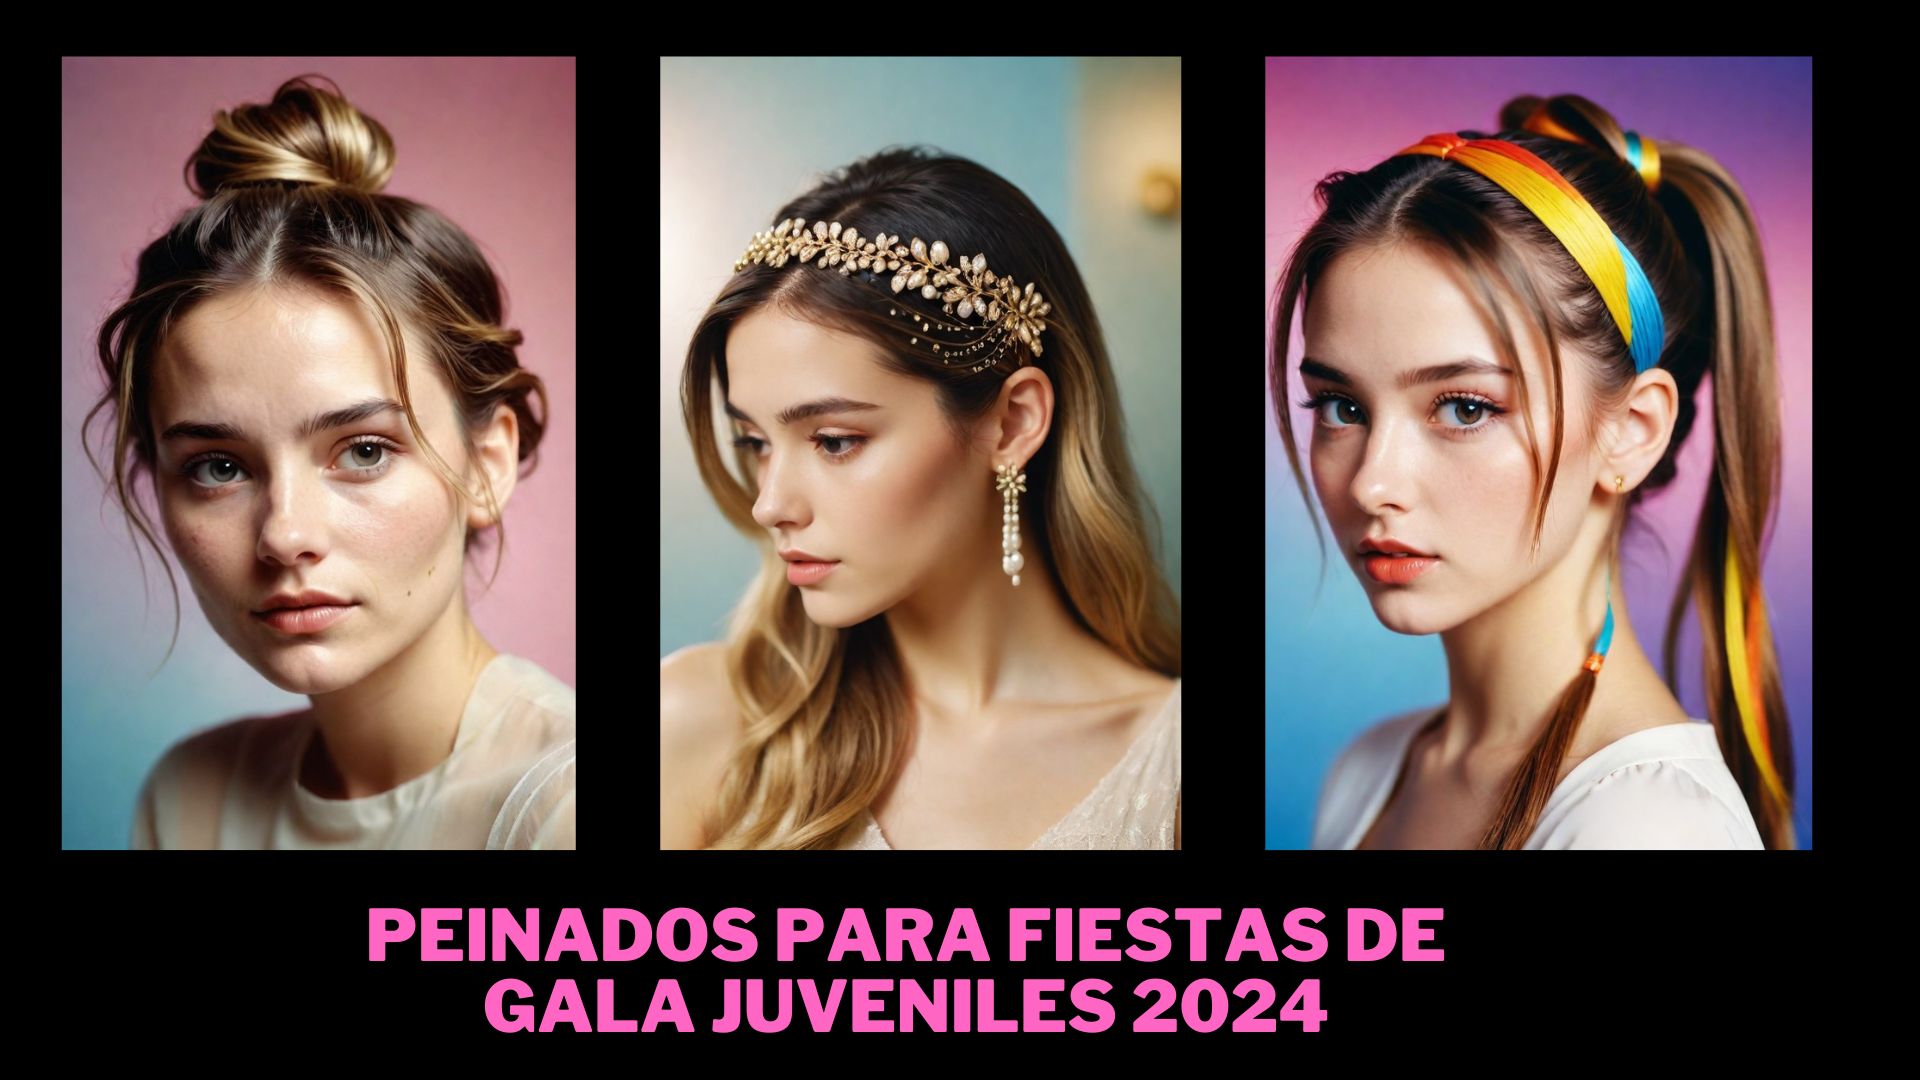 Peinados para fiestas de gala juveniles 2024